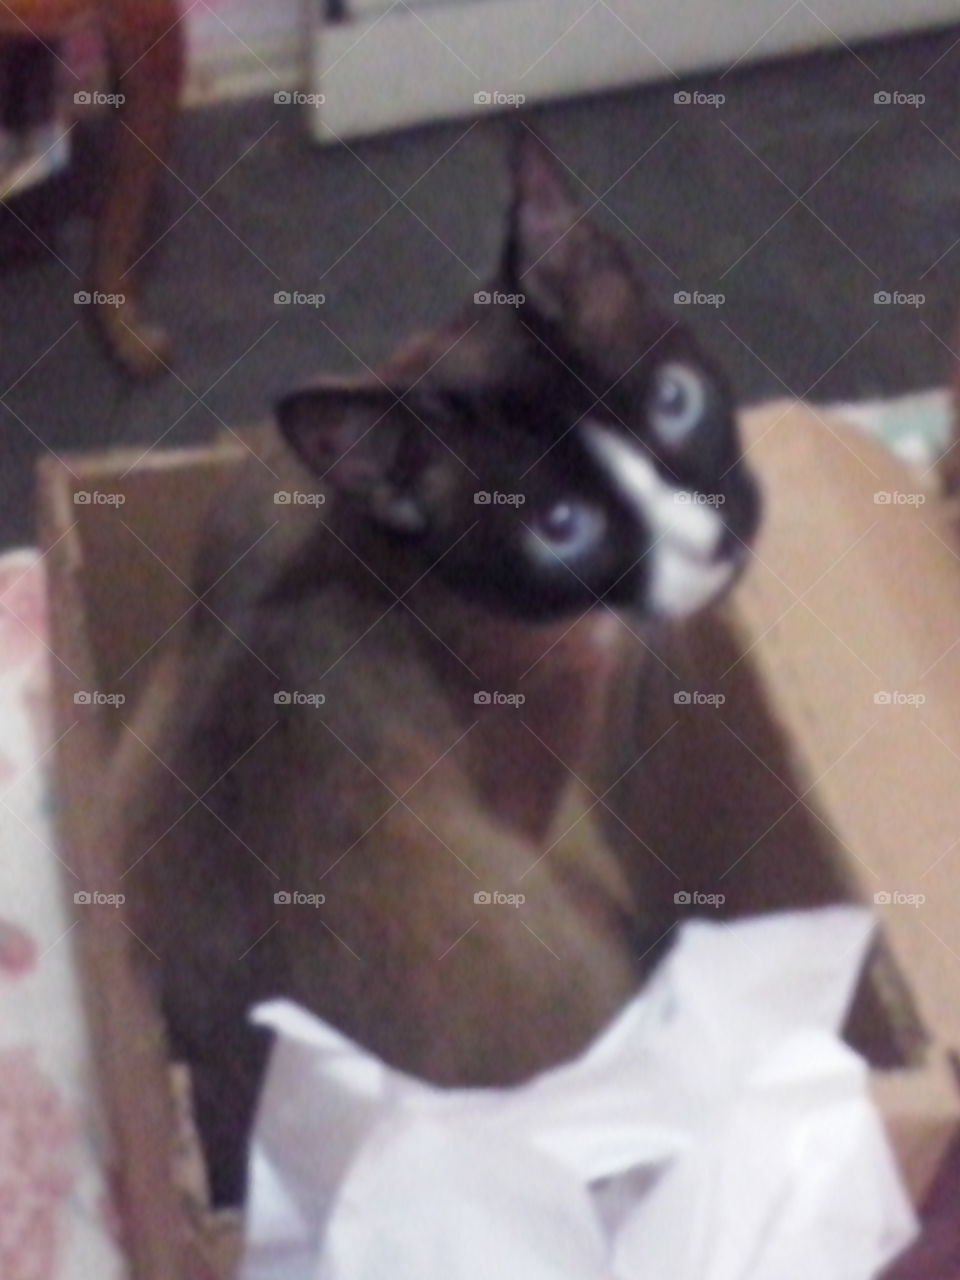 Gato adora uma caixa, como resistir a esse olhar?!/Cat loves a box, how to resist that look?!